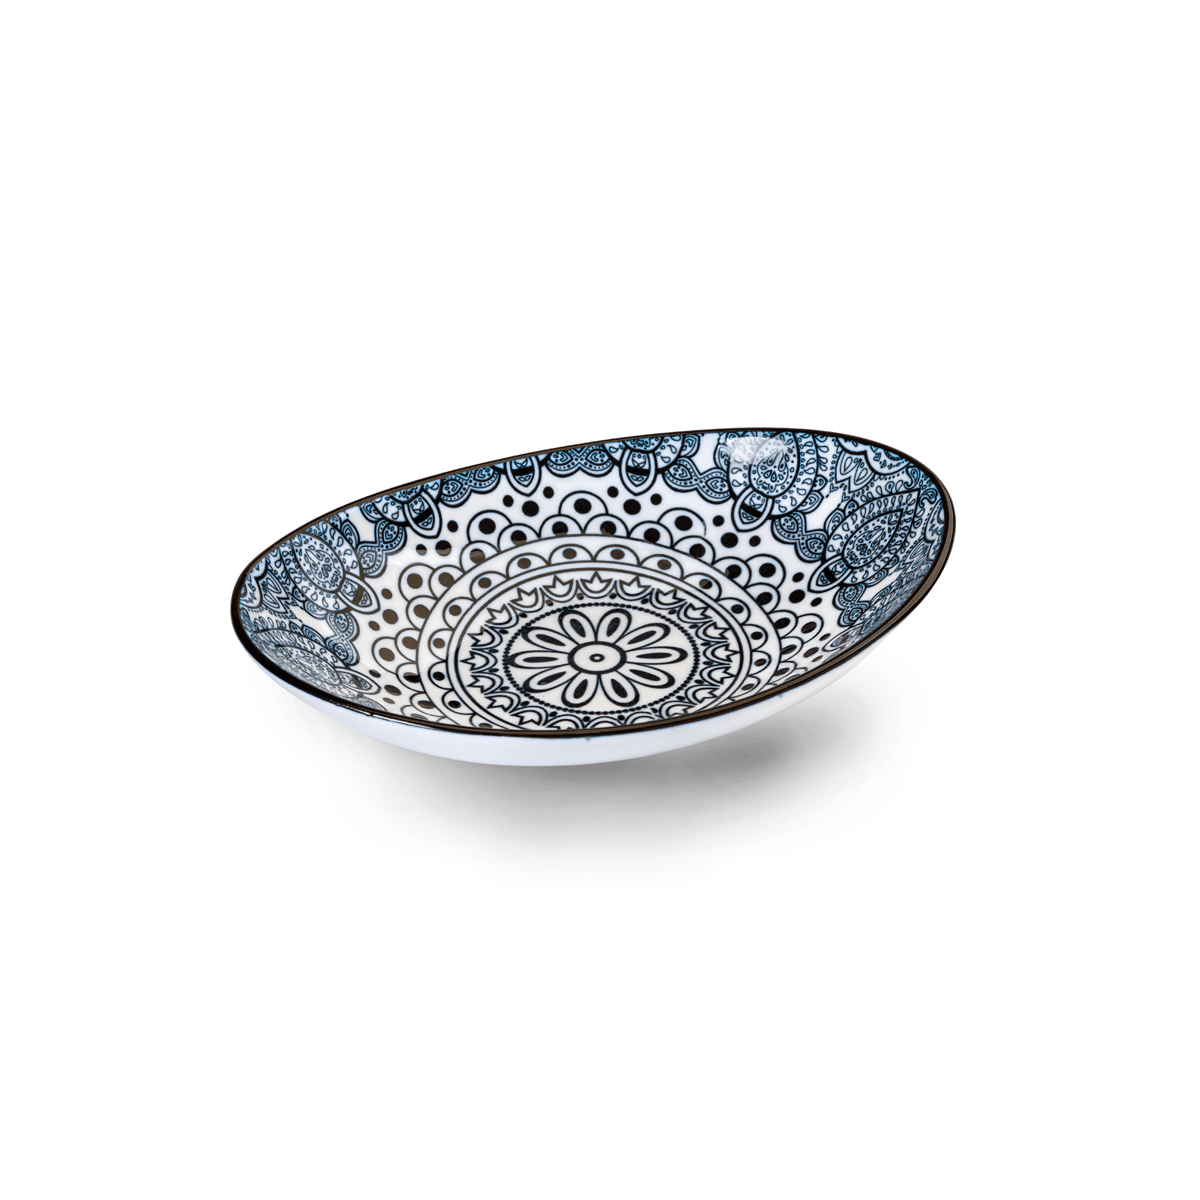 Che Brucia Arabesque Blue Porcelain Oval Bowl 17.75 cm / 7 " Blue Ivory Porcelain